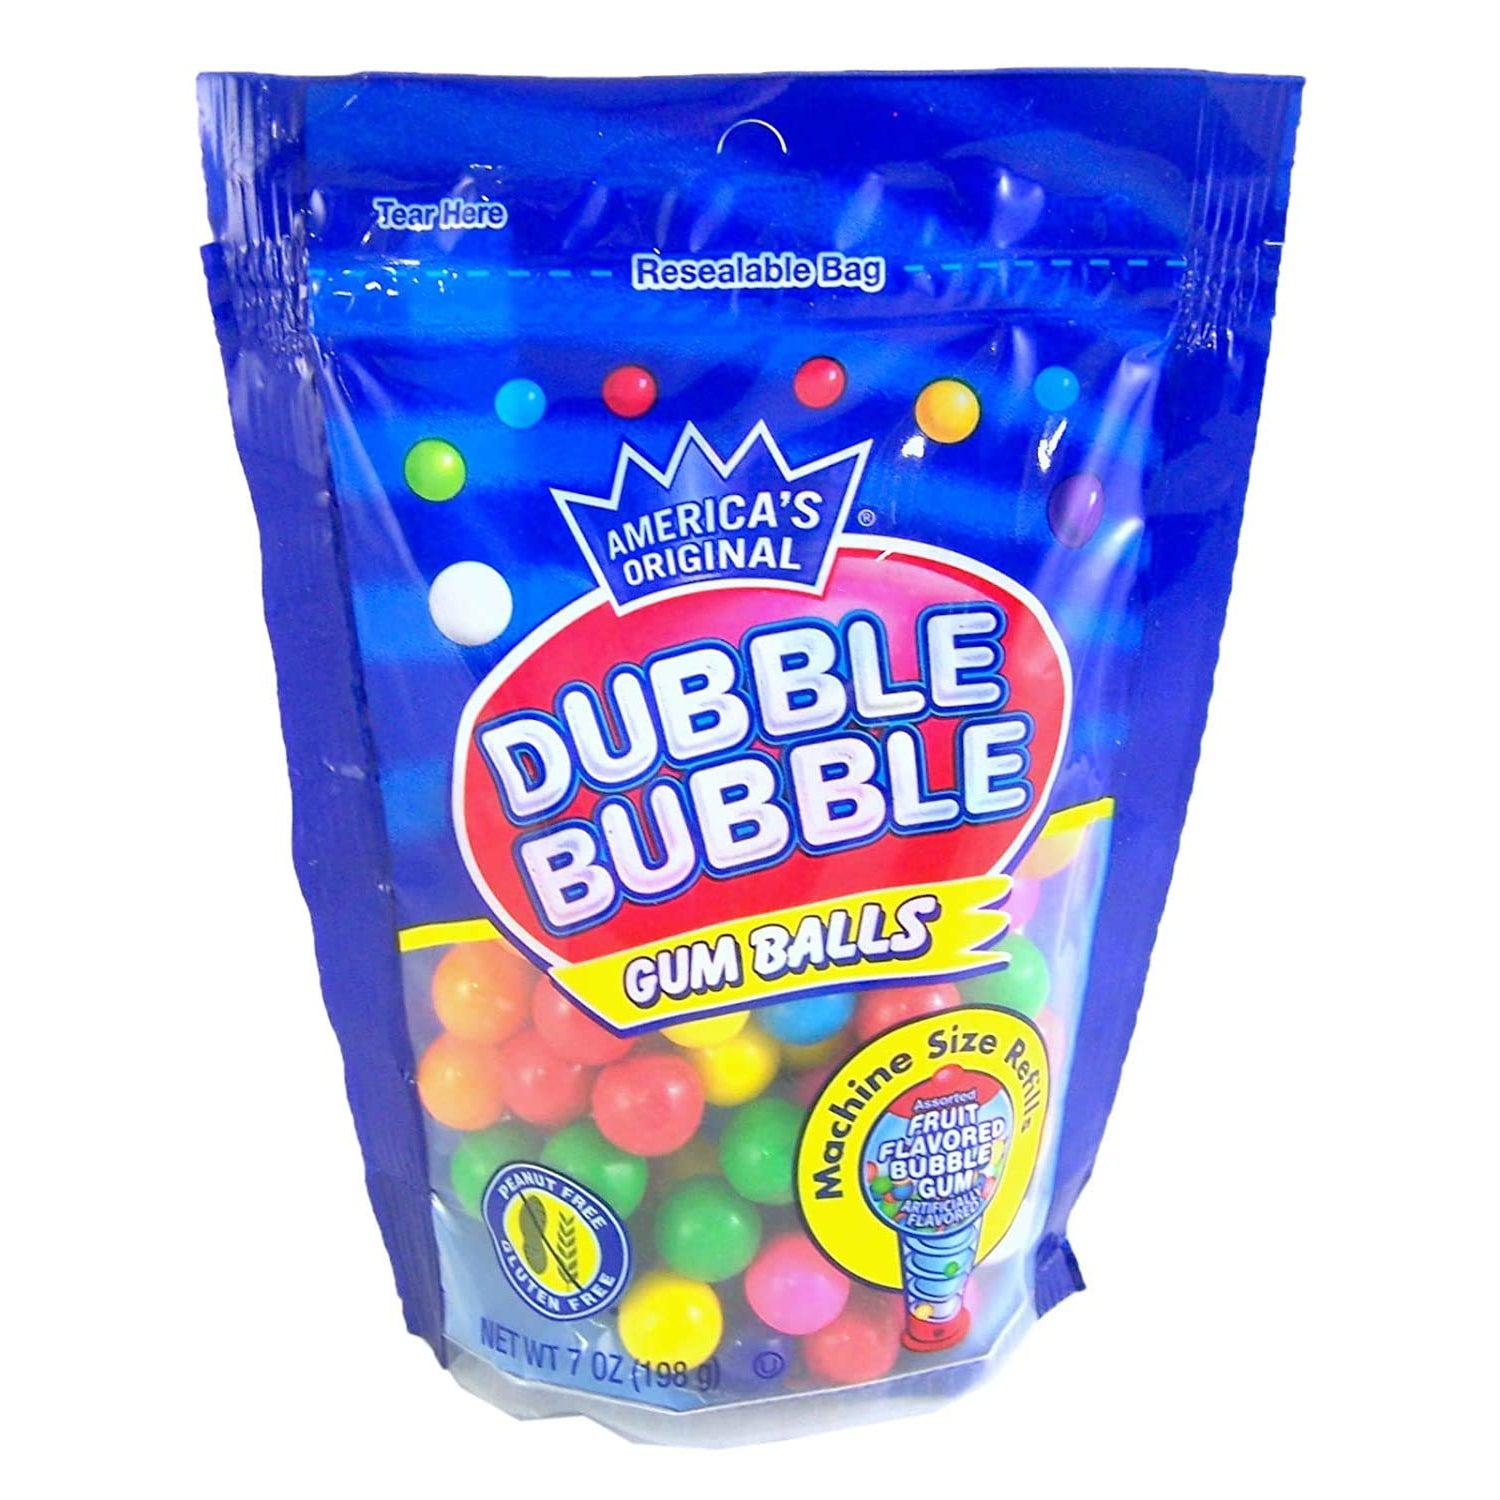 Charms-Dubble Bubble Gum Balls Machine Size Refills Assorted Fruit Flavor, 7 oz. peg bag-13347-Single-Legacy Toys